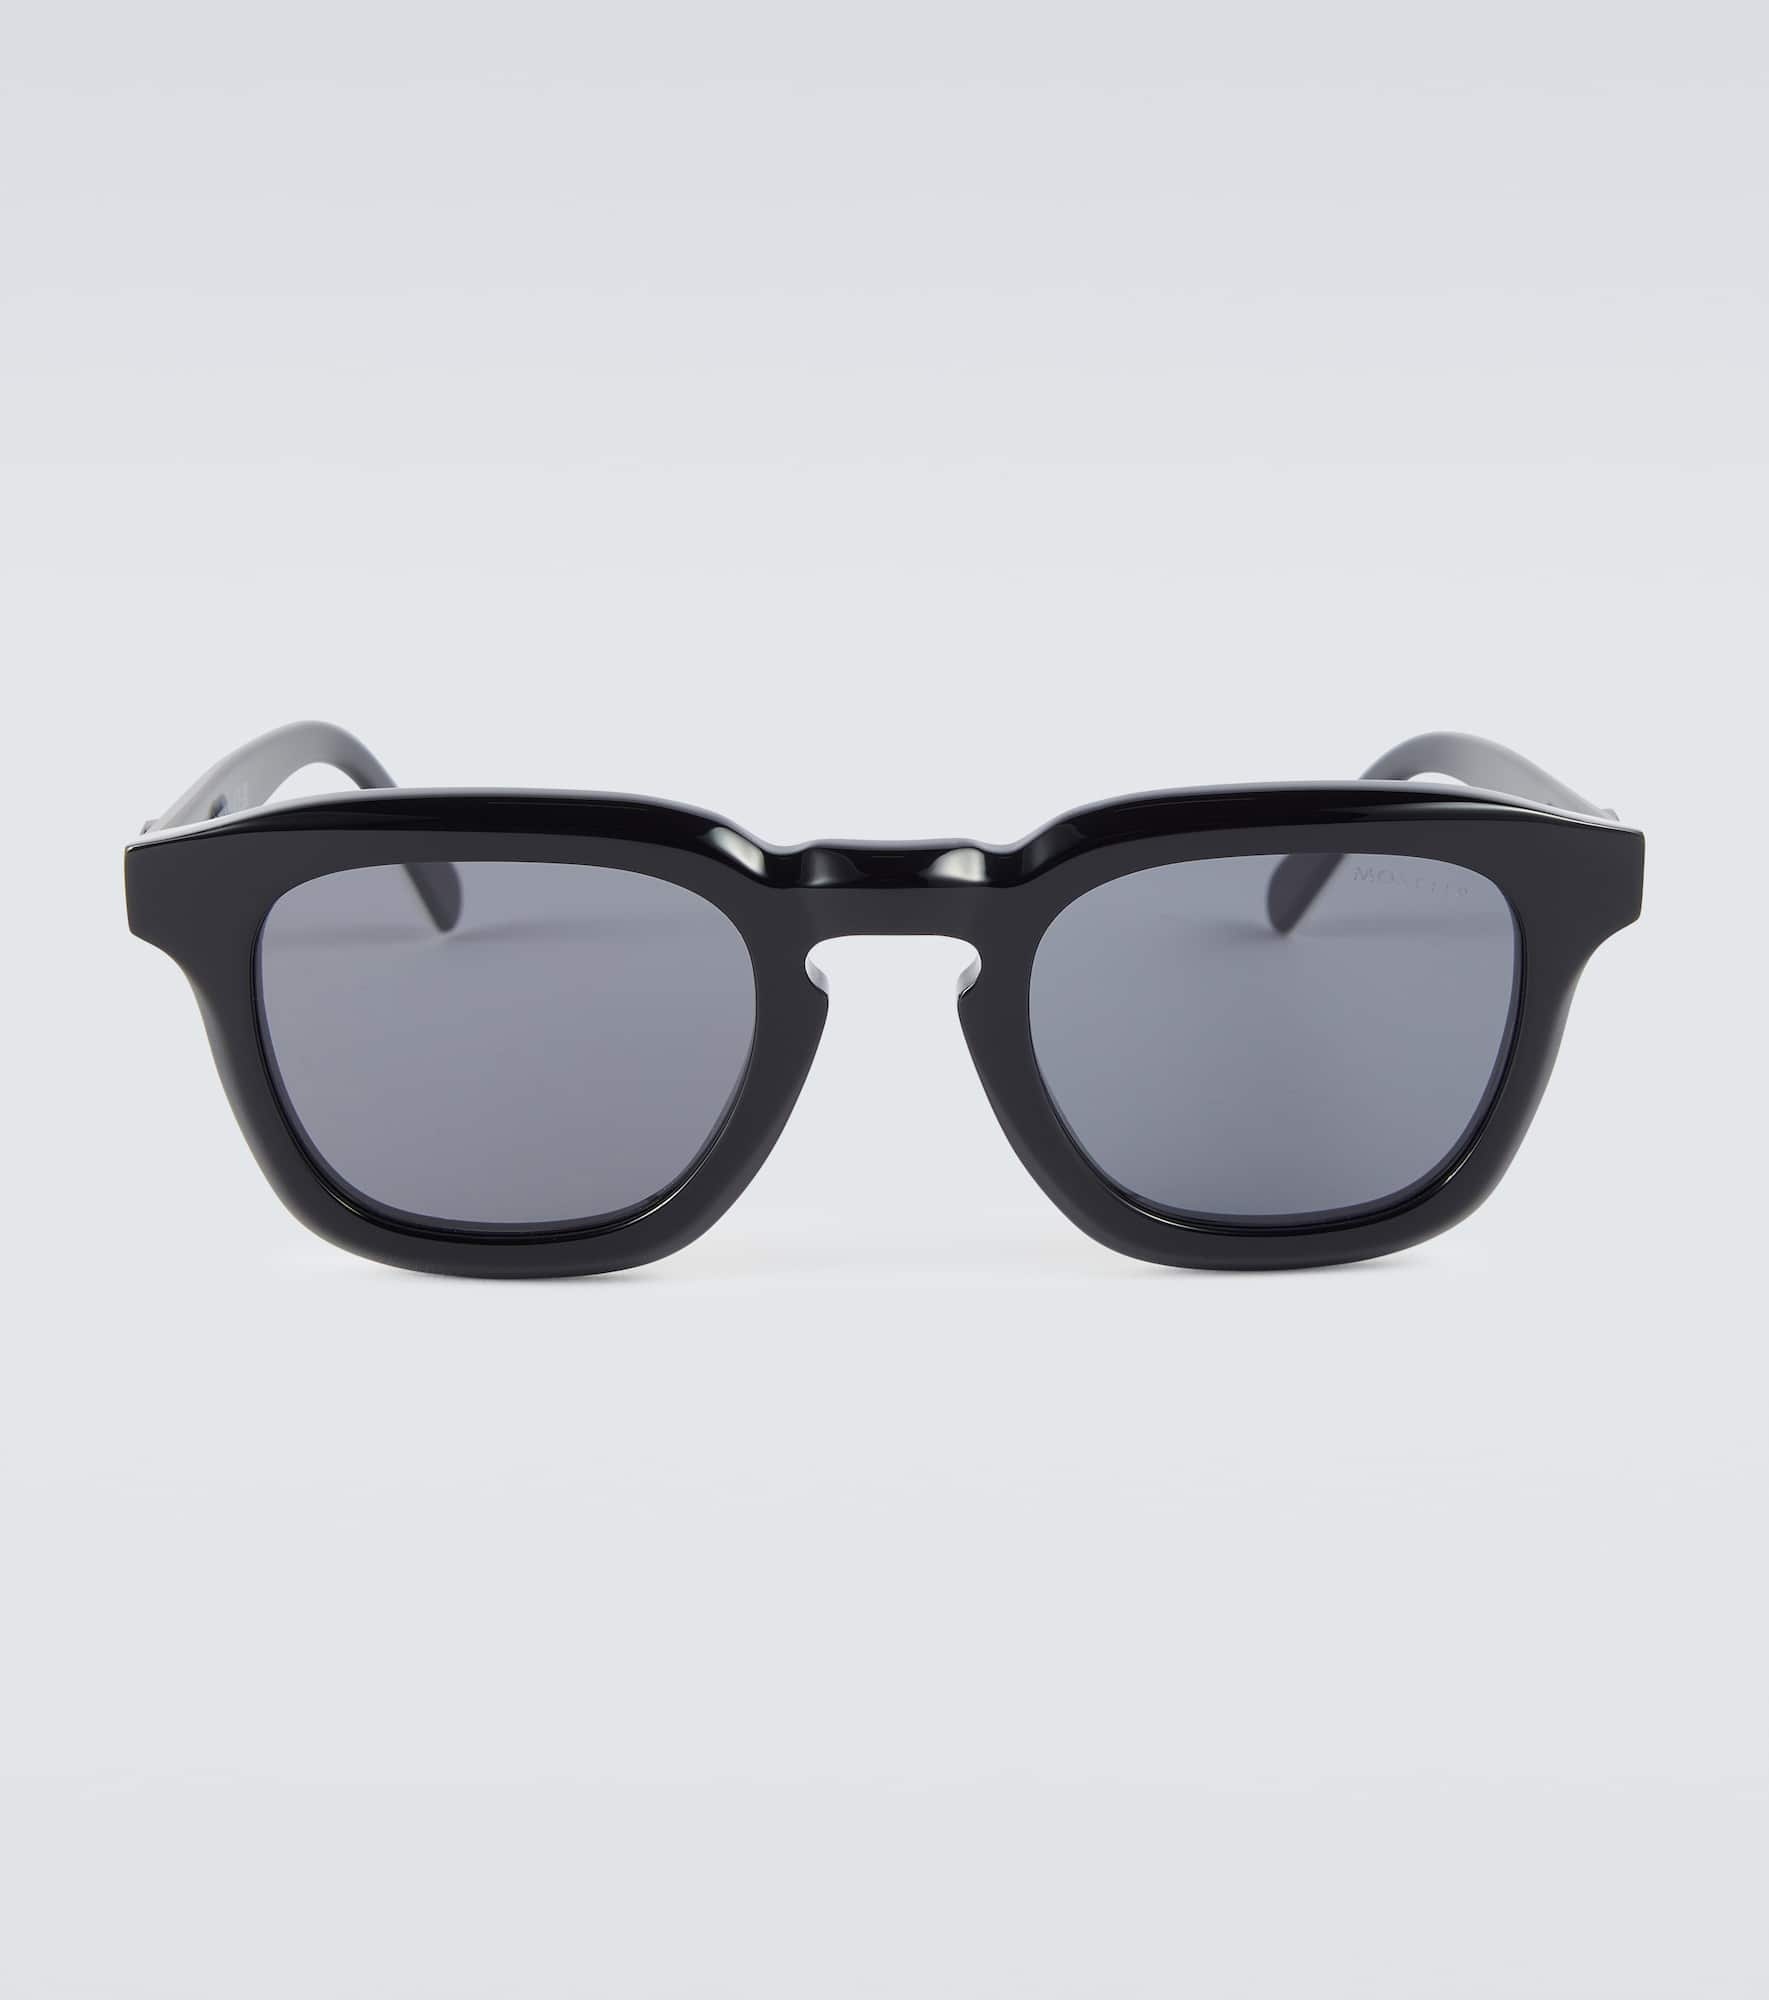 Orbit round sunglasses - 1